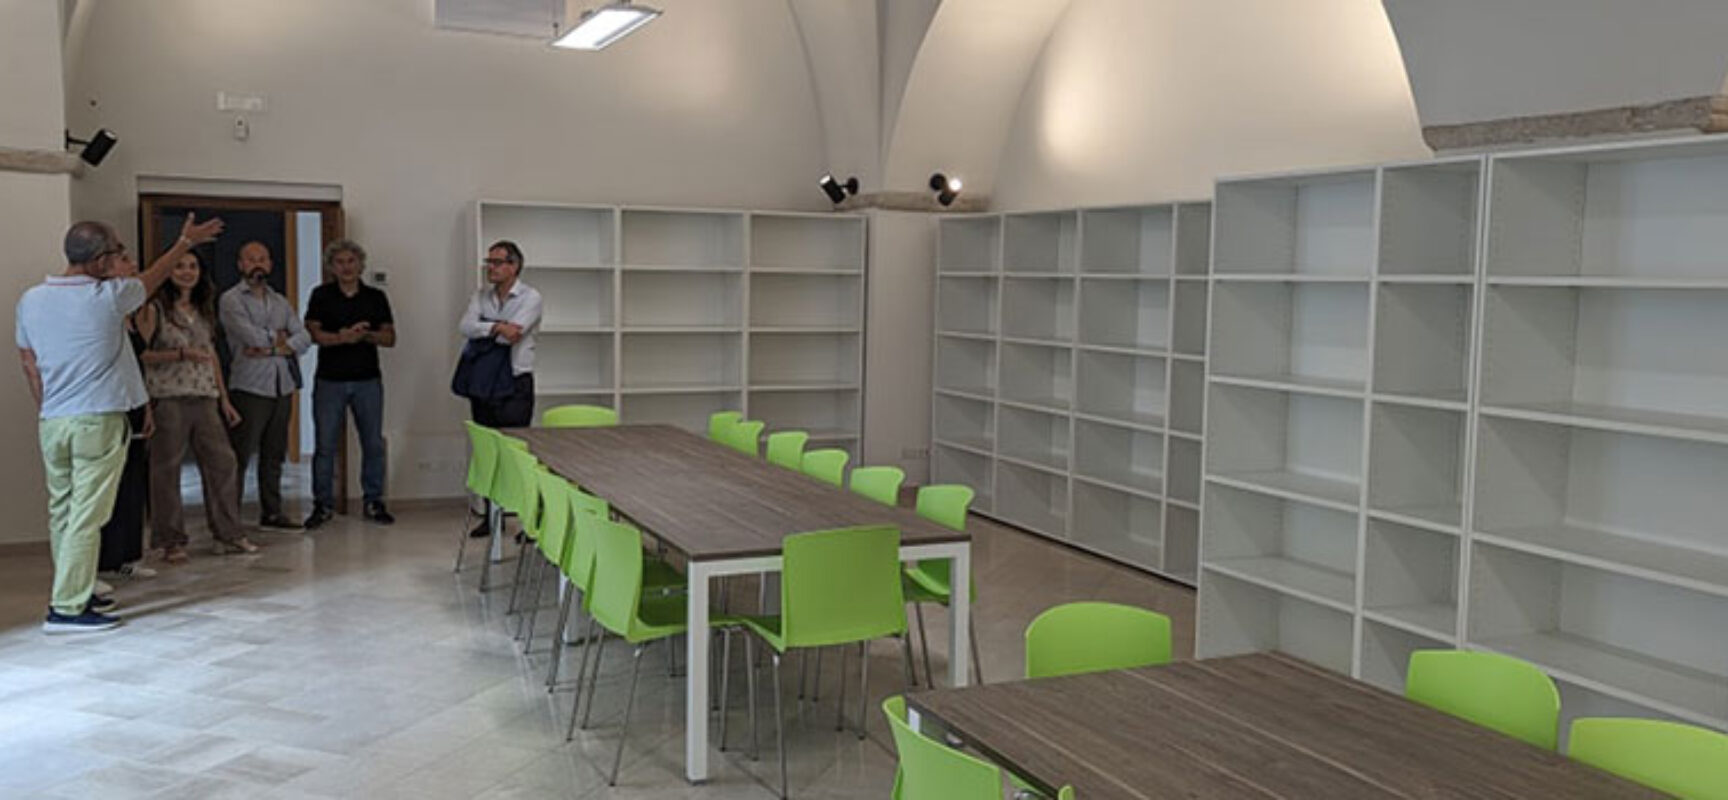 Lavori biblioteca, Angarano: “A settembre potremo tornare a frequentare polo culturale”